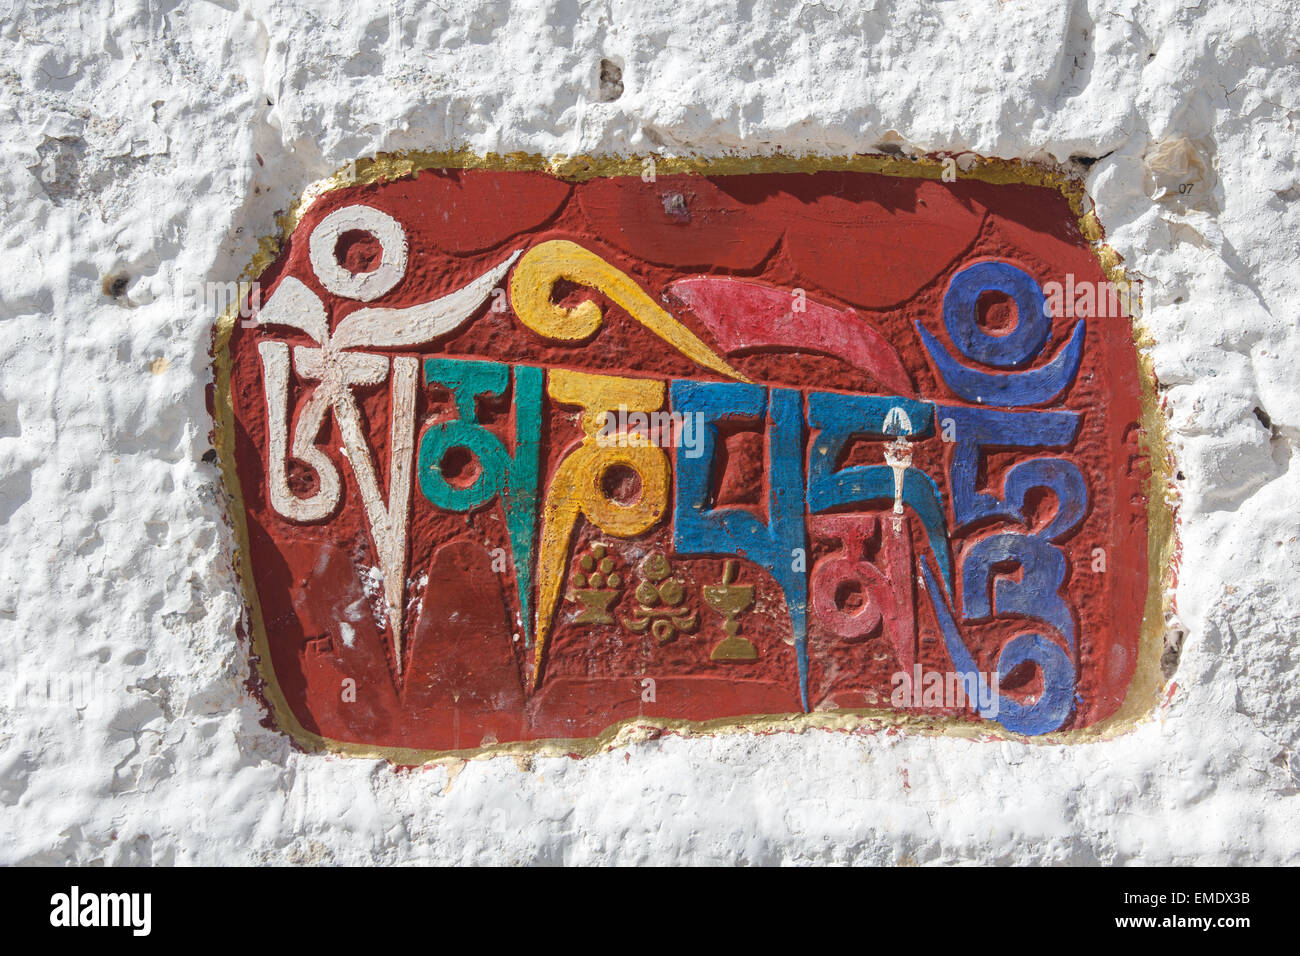 Il sanscrito "mantra Om mani padme hum' inscritto e dipinta come una pietra di mani su di una cavità in una parete del palazzo del Potala in Lhas Foto Stock